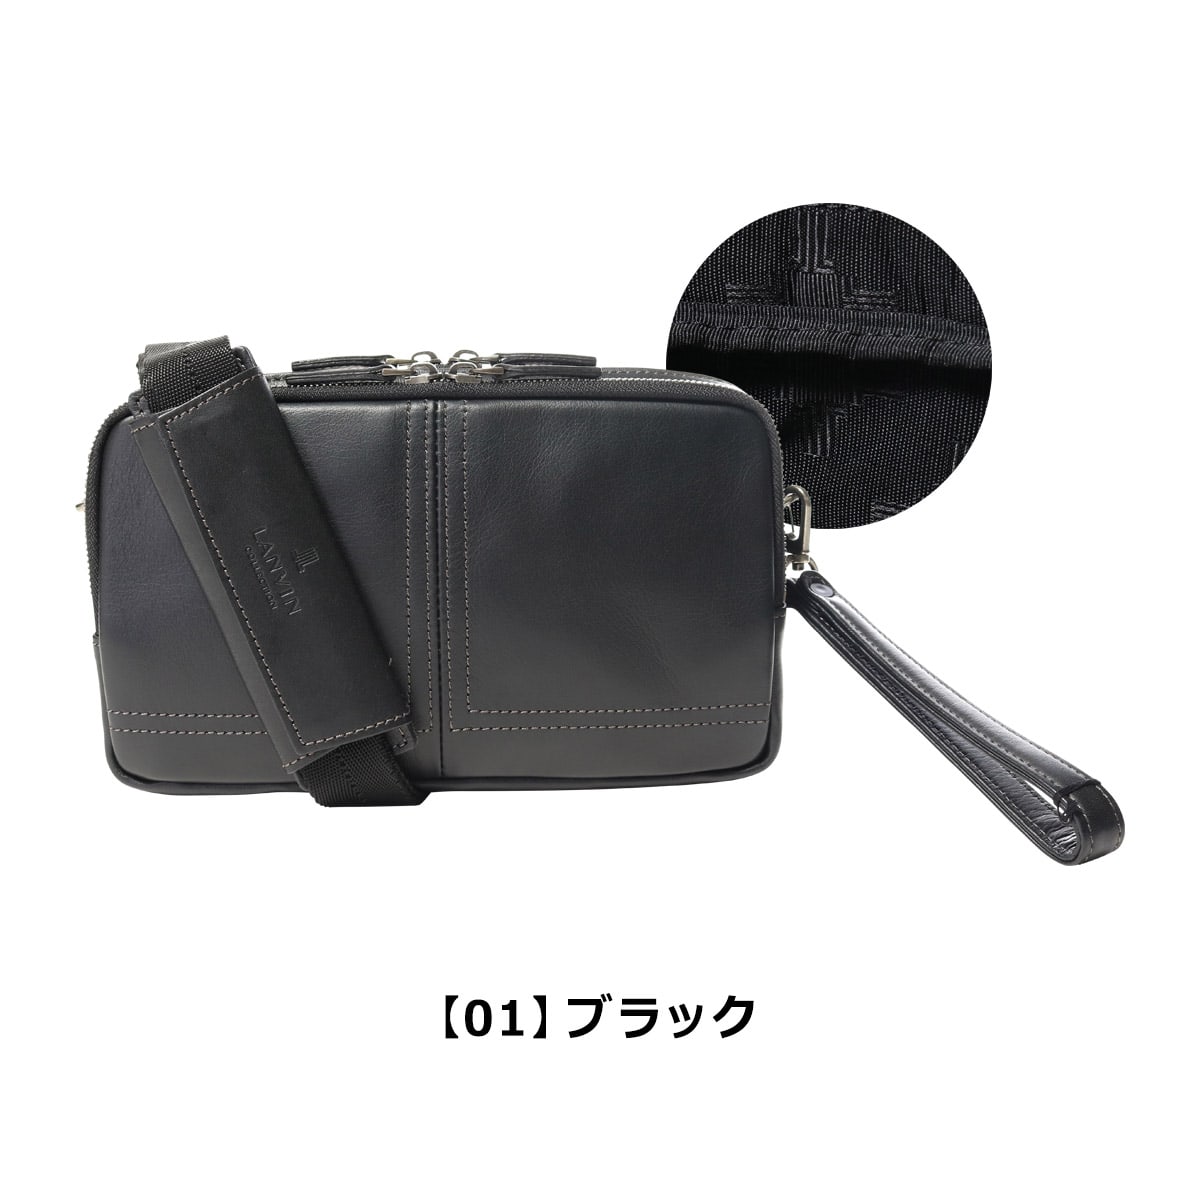 ランバンコレクション セカンドバッグ メンズ 日本製 サントル 286204 